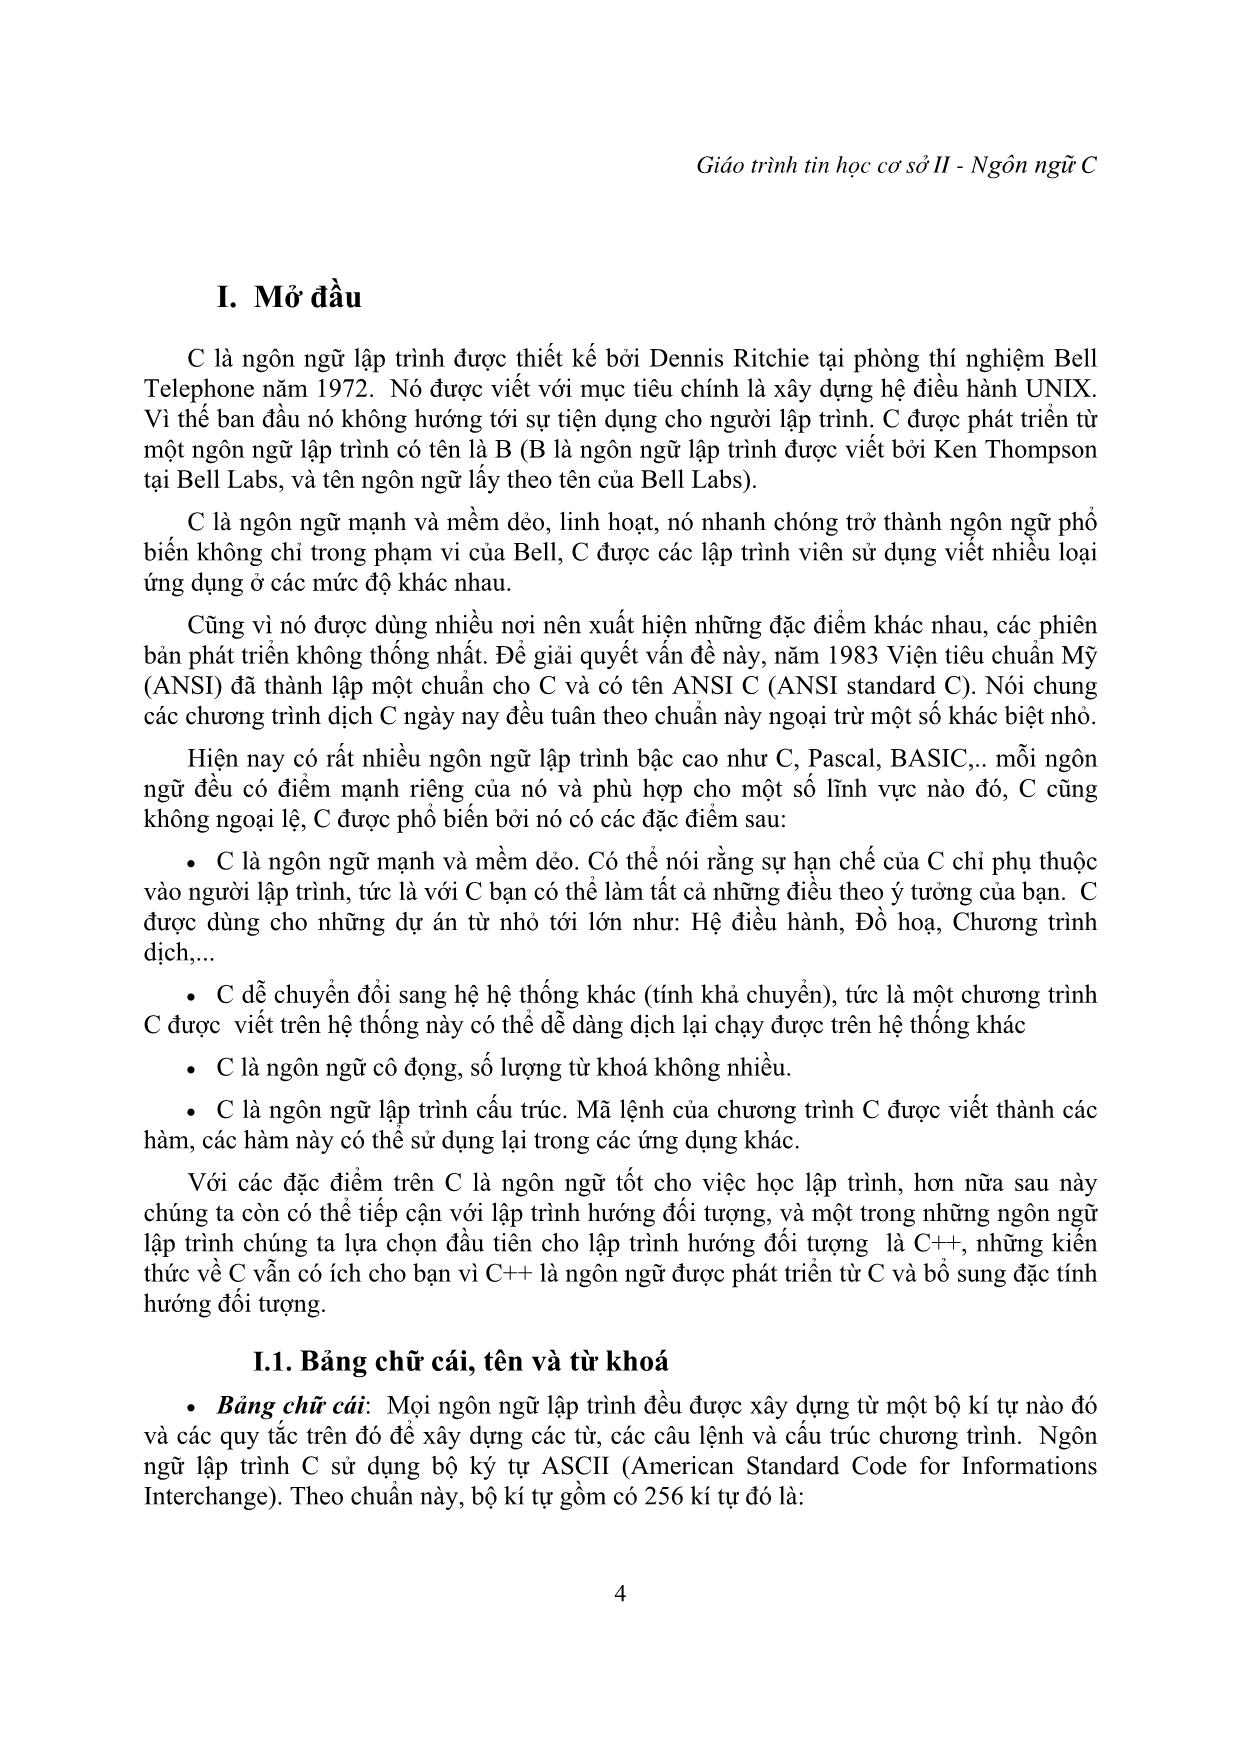 Giáo trình Tin học cơ sở - Phần lập trình trên ngôn ngữ C trang 4